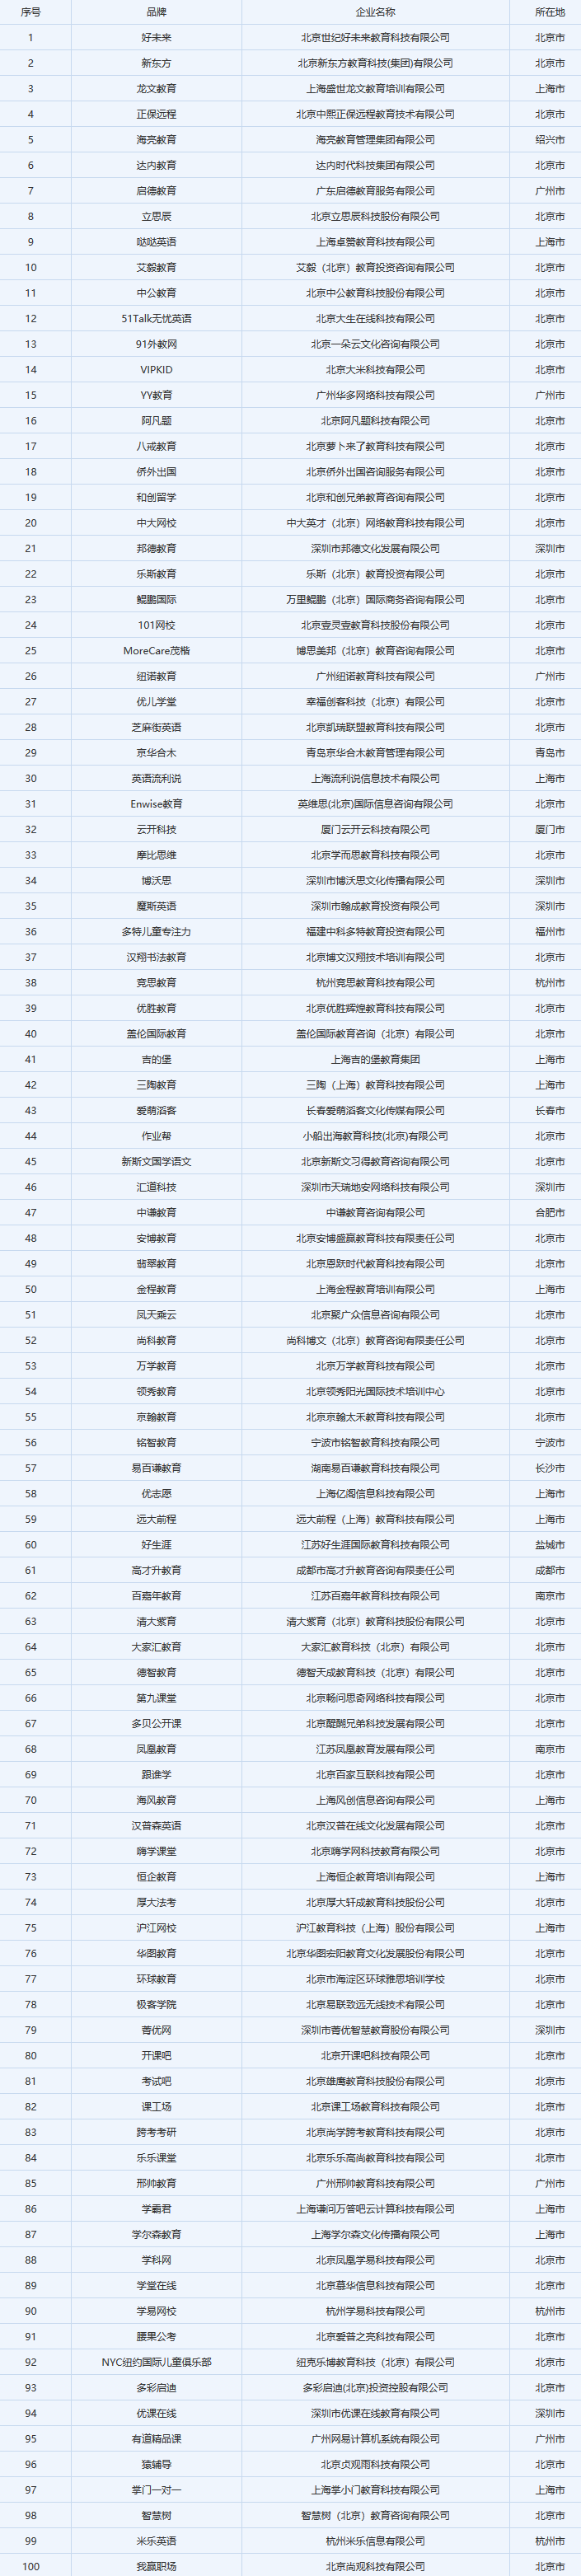 中国口碑教育企业排名前100强